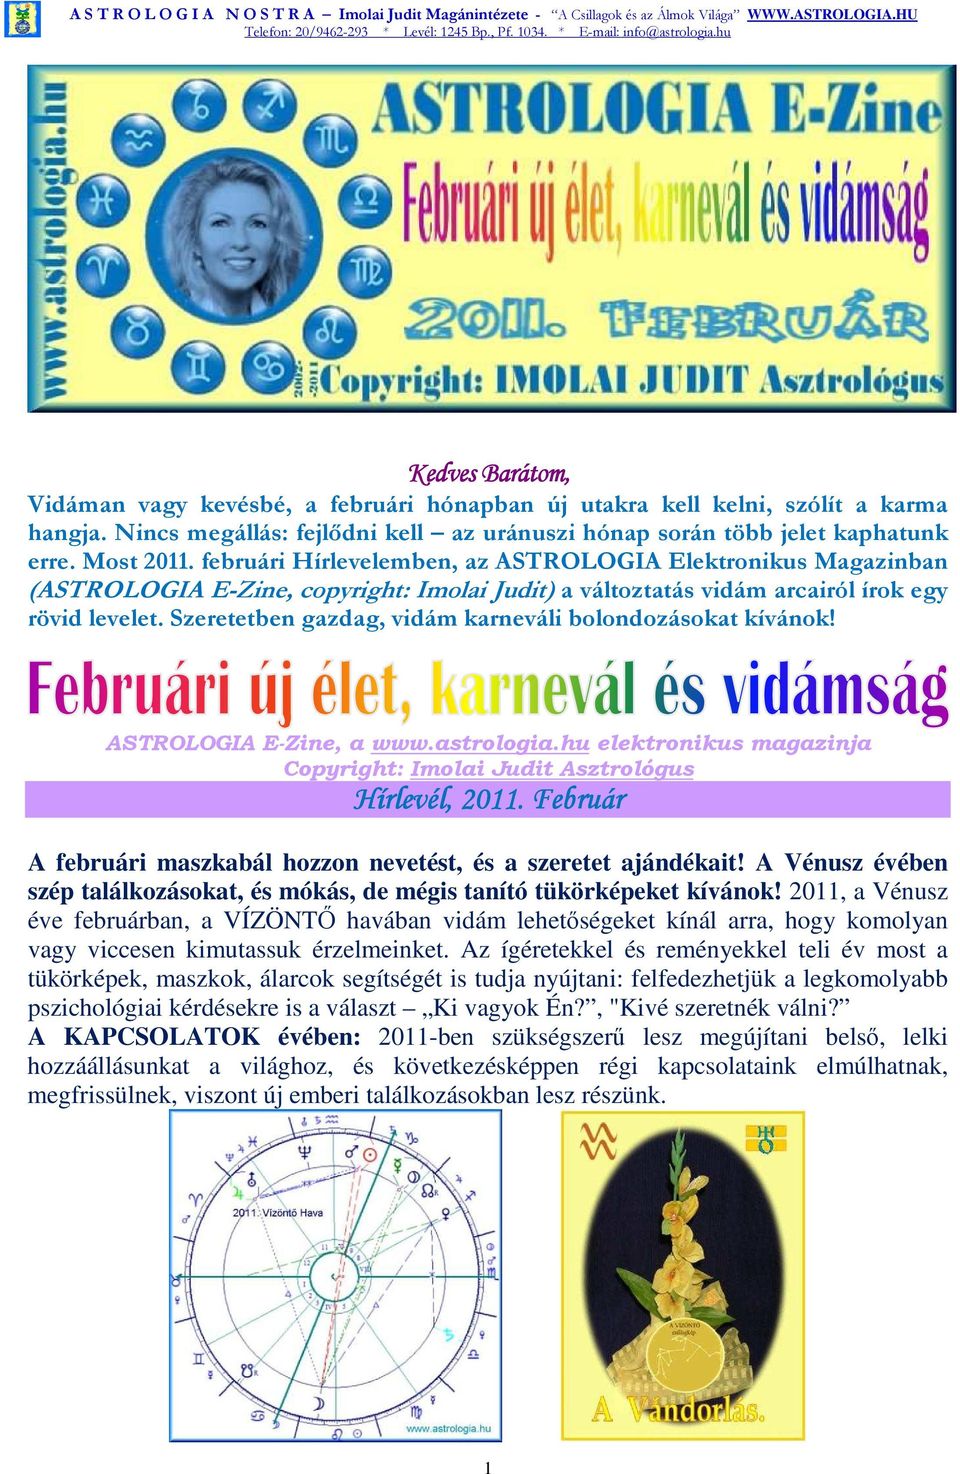 Szeretetben gazdag, vidám karneváli bolondozásokat kívánok! ASTROLOGIA E-Zine, a www.astrologia.hu elektronikus magazinja Copyright: Imolai Judit Asztrológus Hírlevél, 2011.